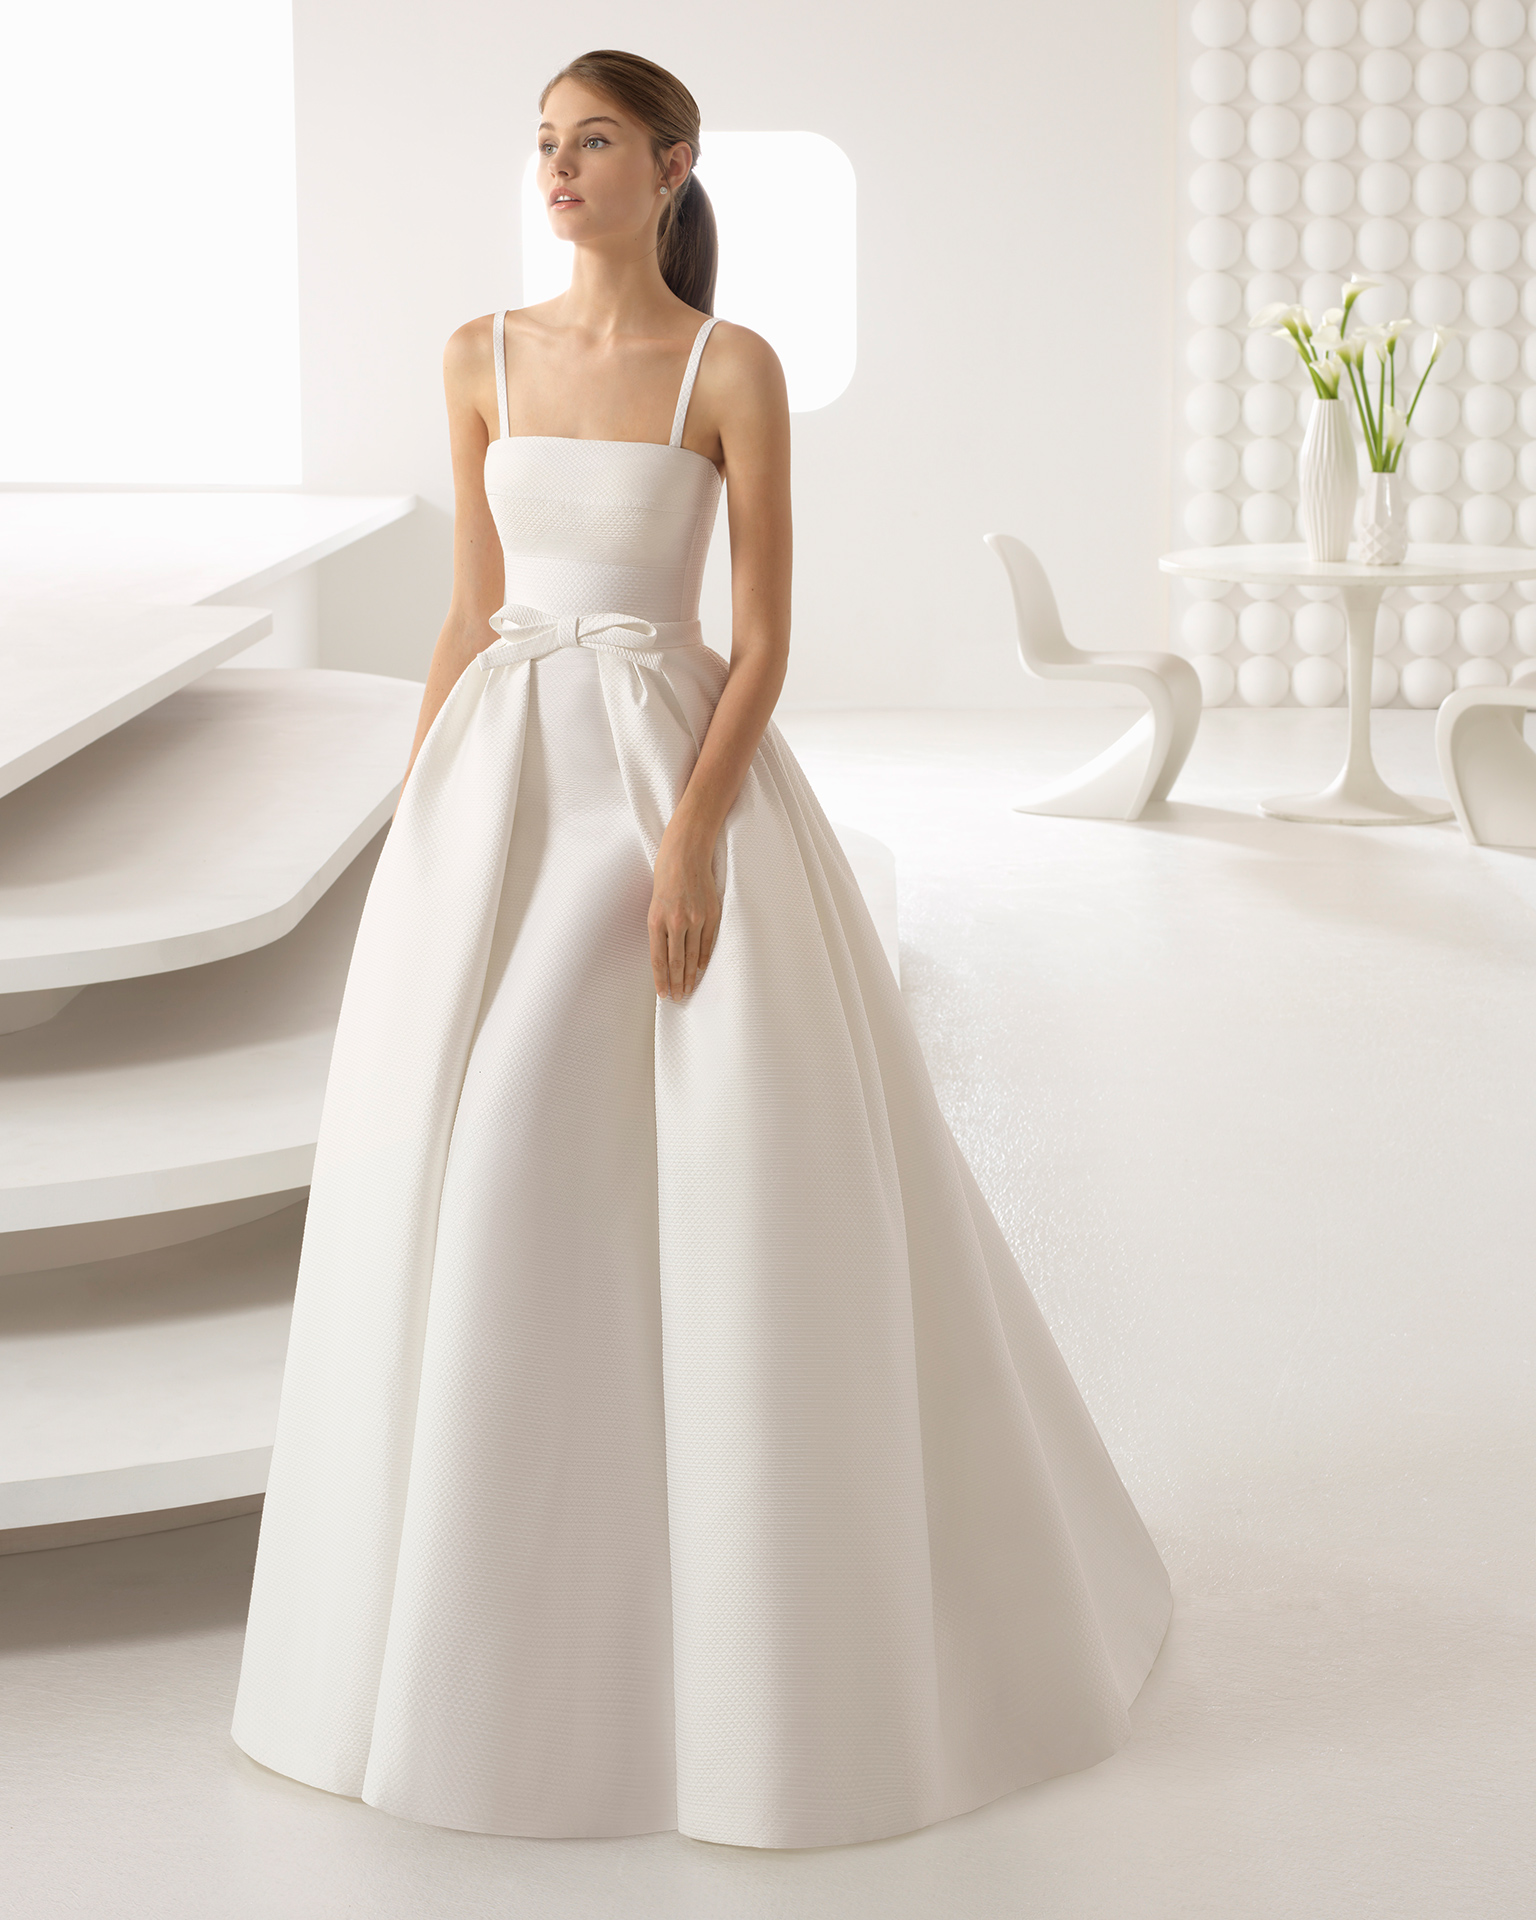 10 vestidos de novia 2018 Rosa Clará | Todoboda.com